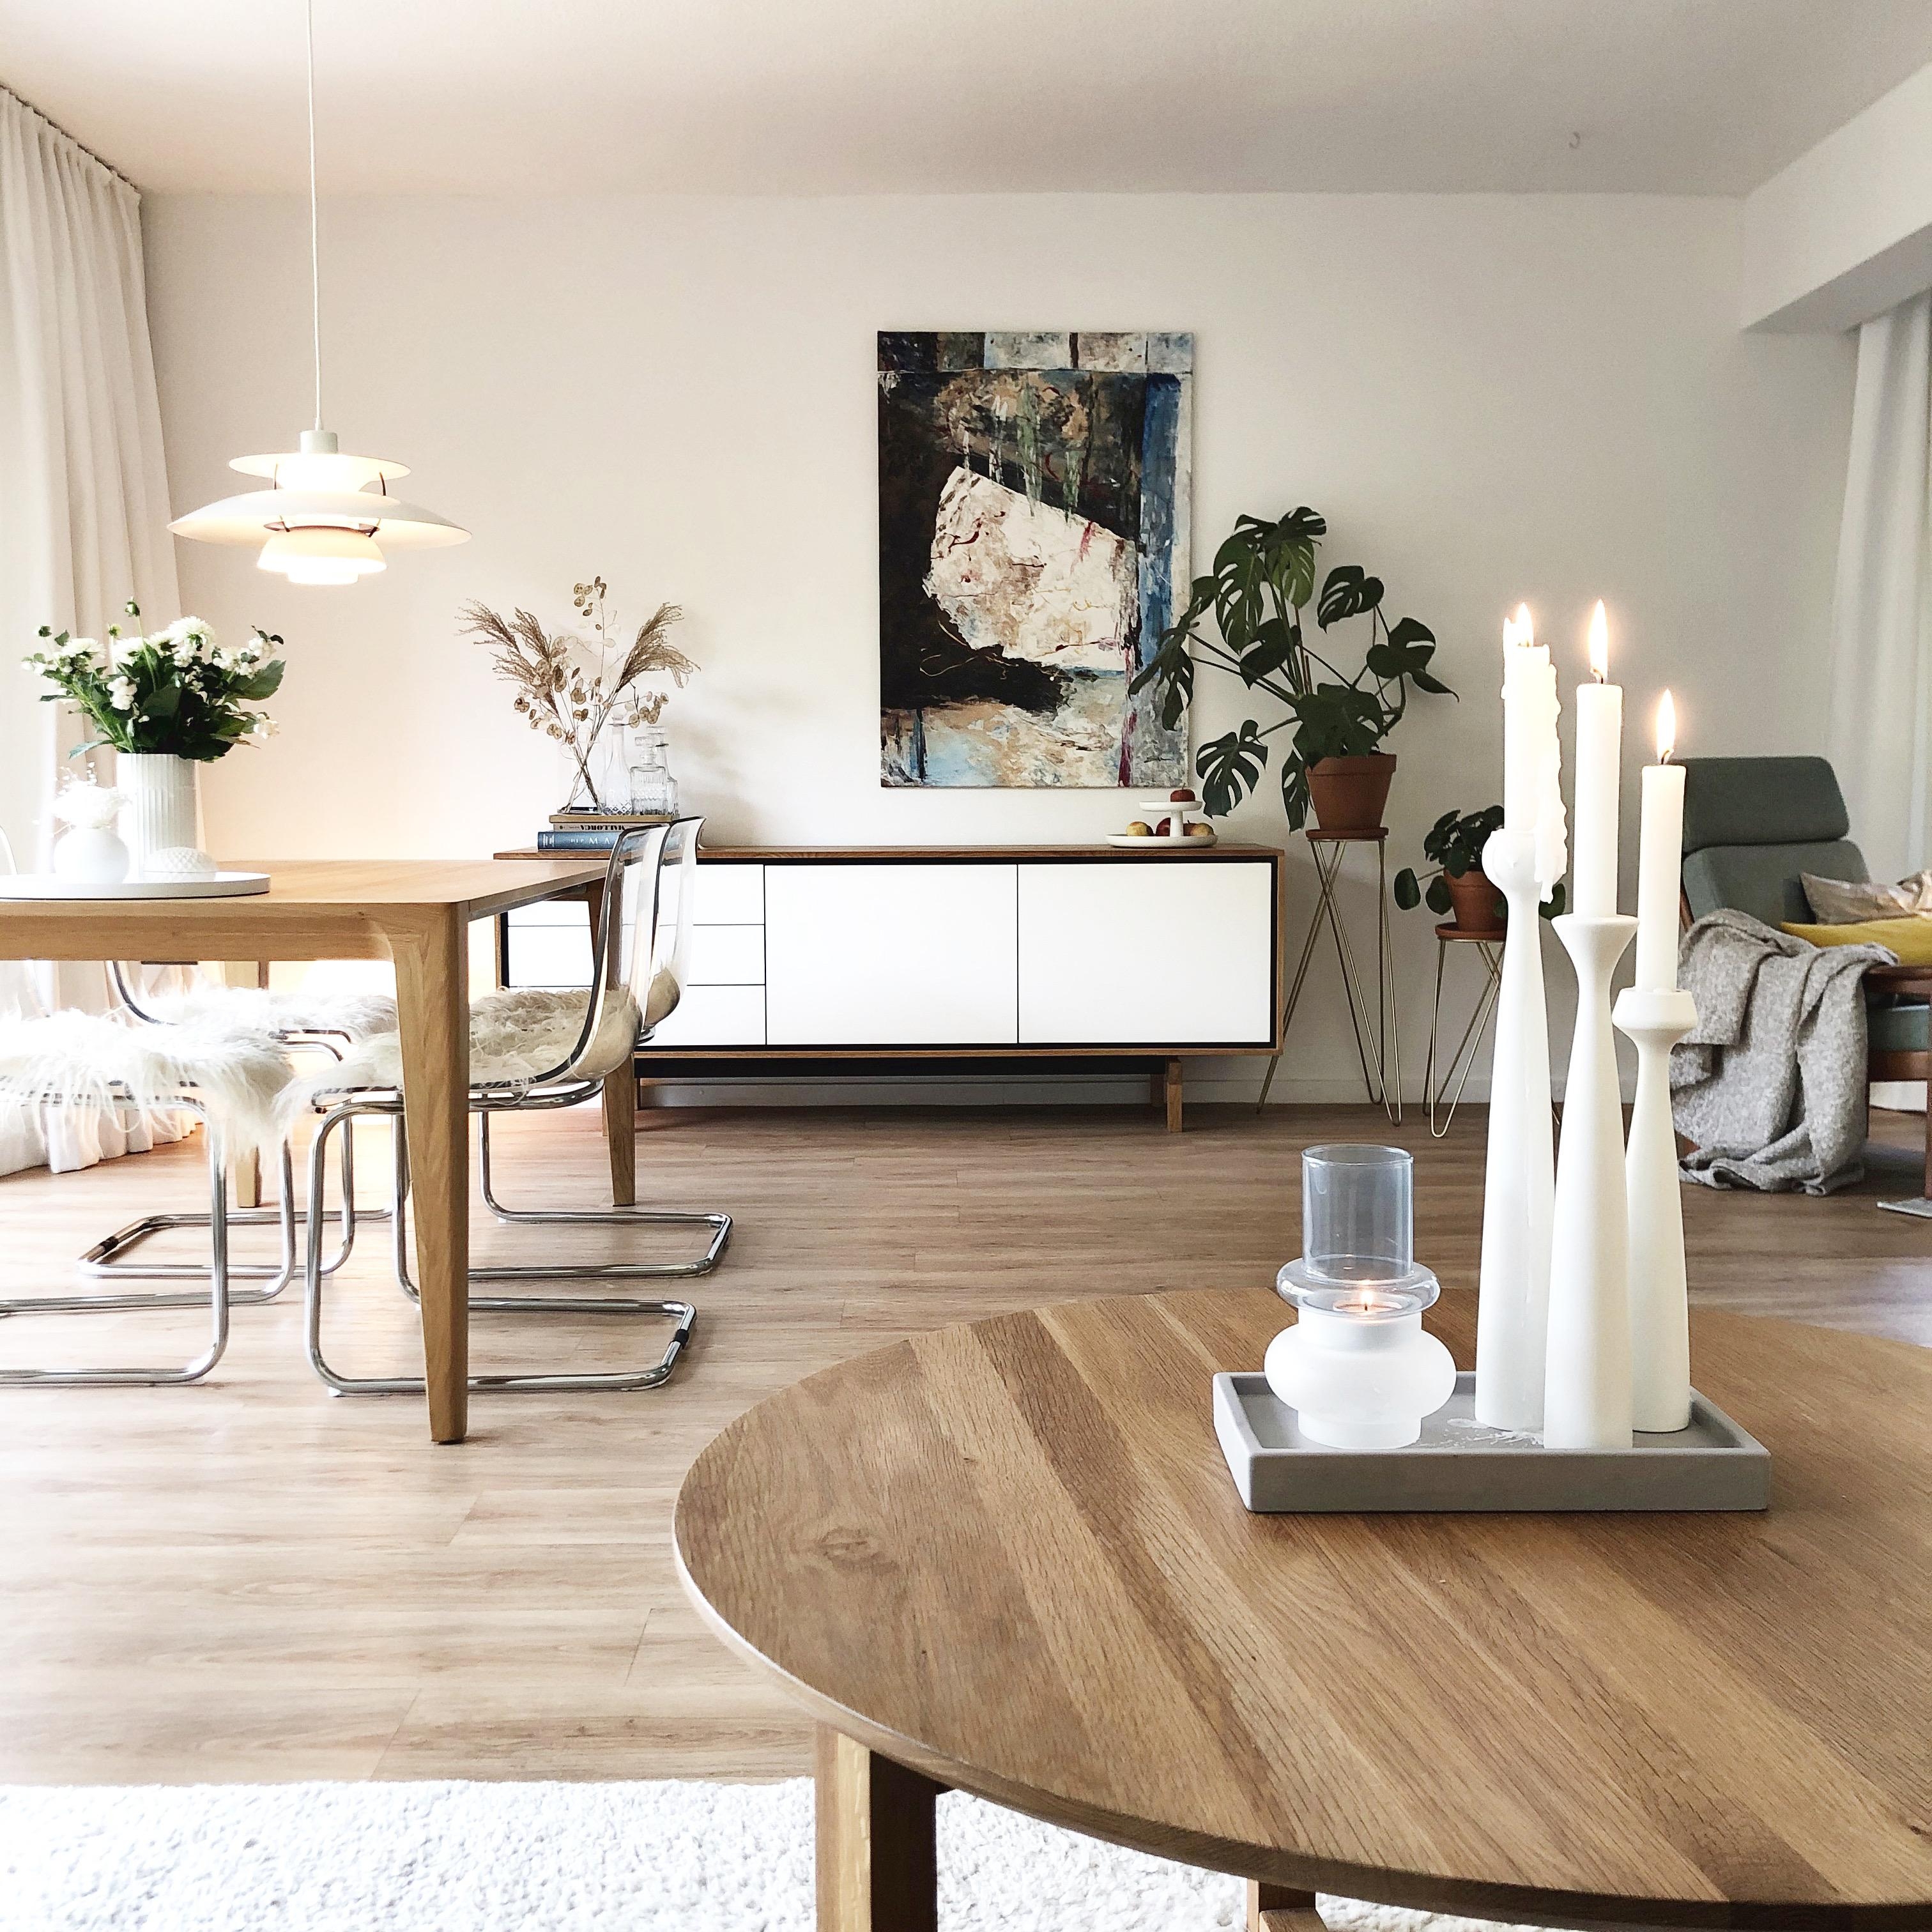 Dienstag - Zeit für ☕️
#wohnzimmer #livingroom #esstisch #diningtable #sideboard